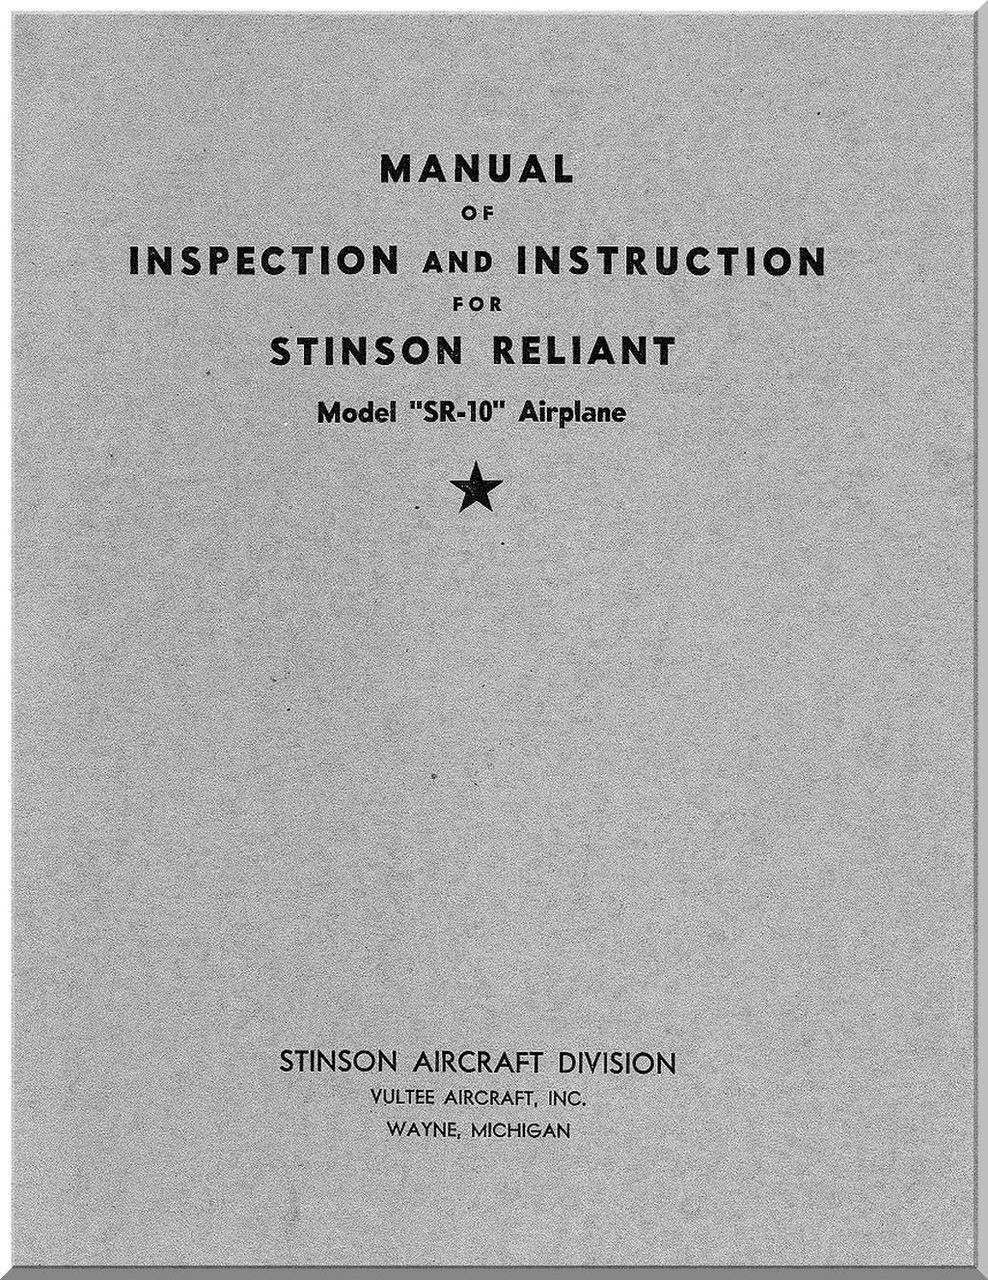 Stinson Paper Company